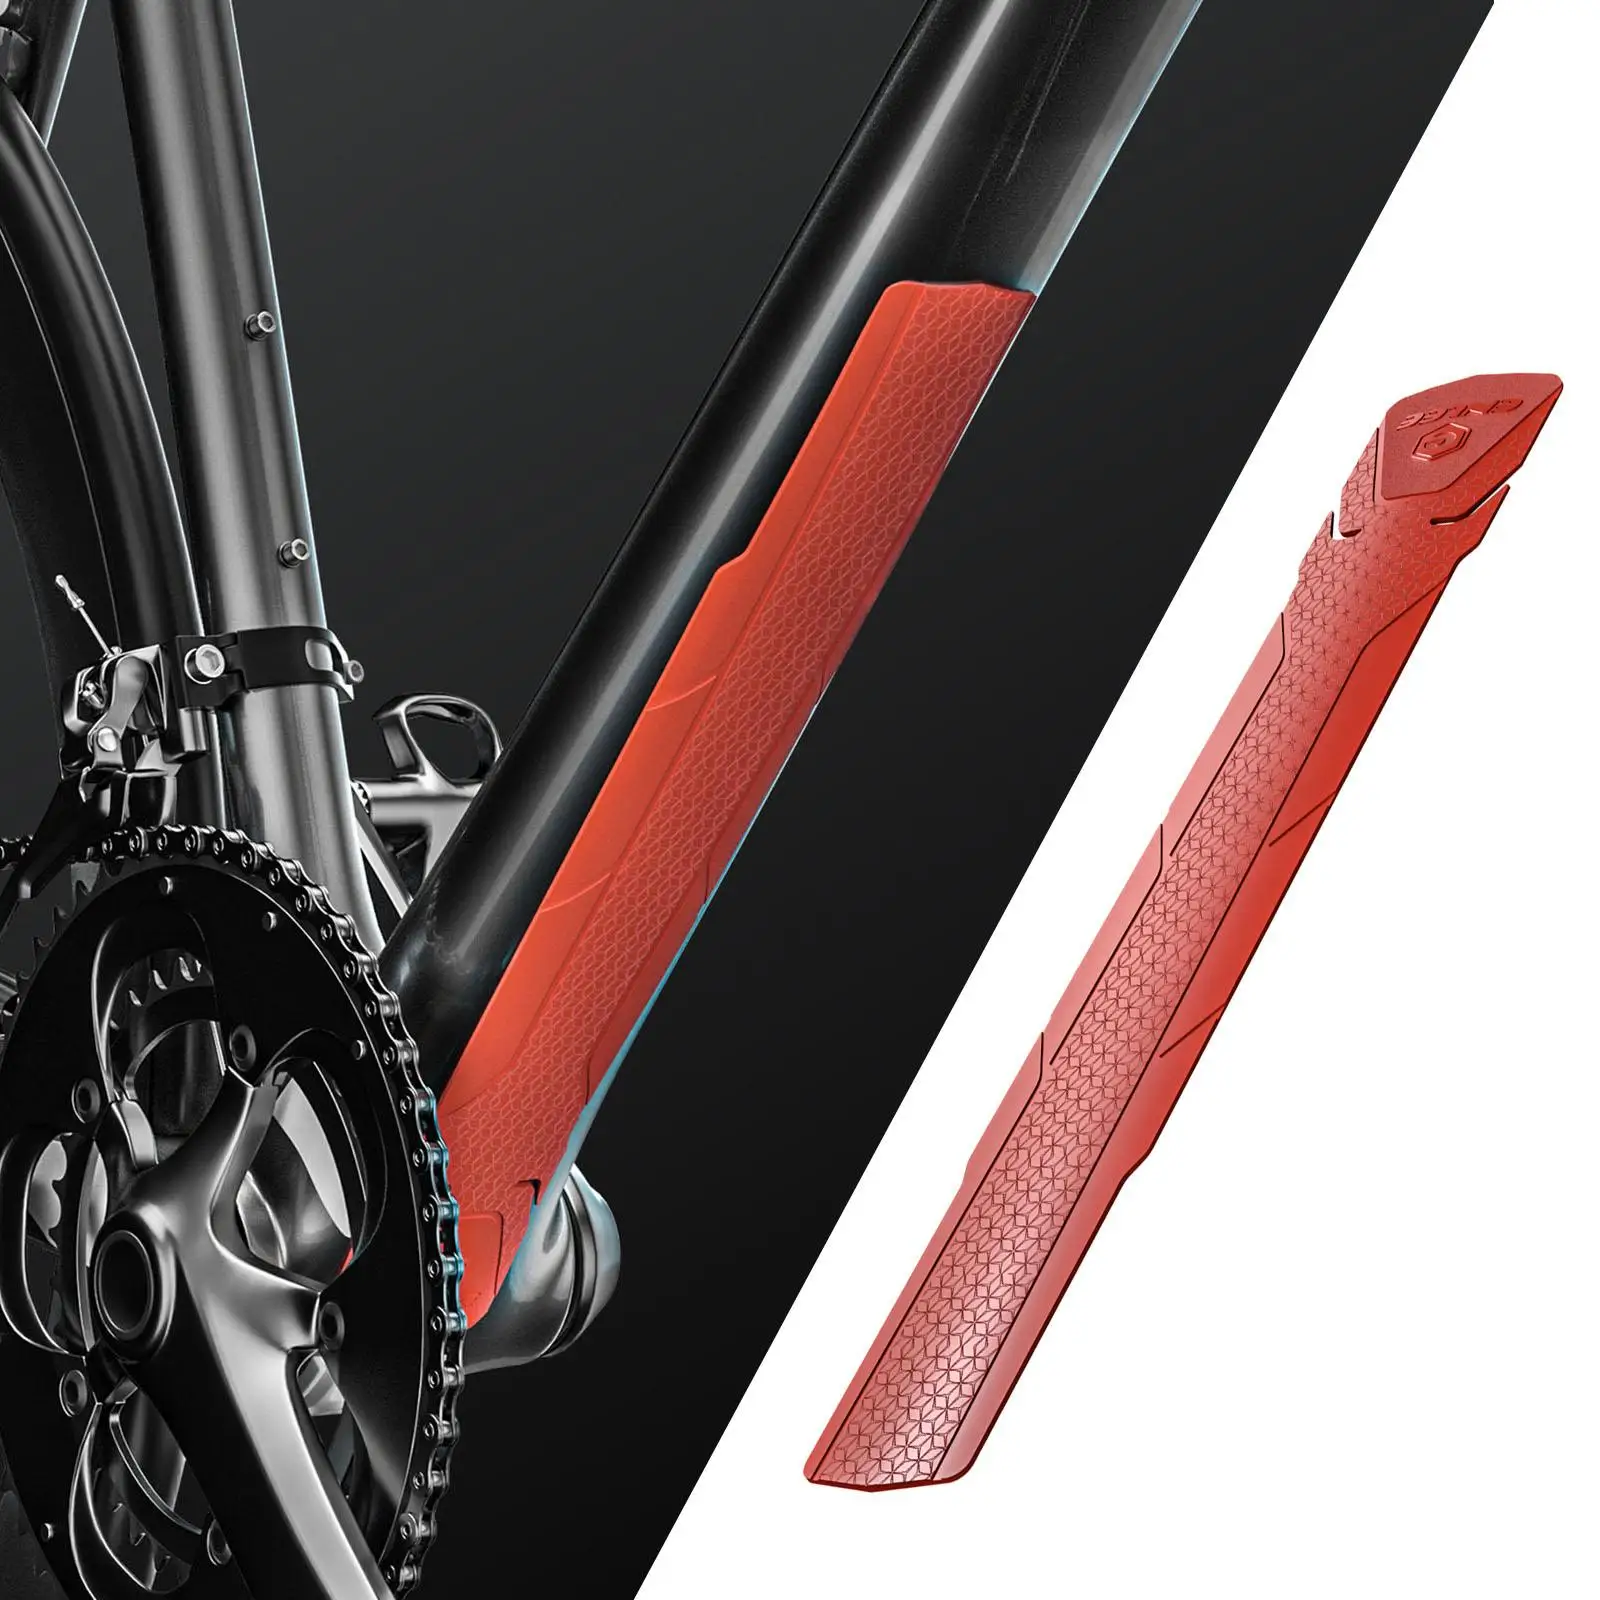 Bike   Tape Decal Bike  Chain Protective  Bike Protective Tape, Protects  of Your Bike from Scratches